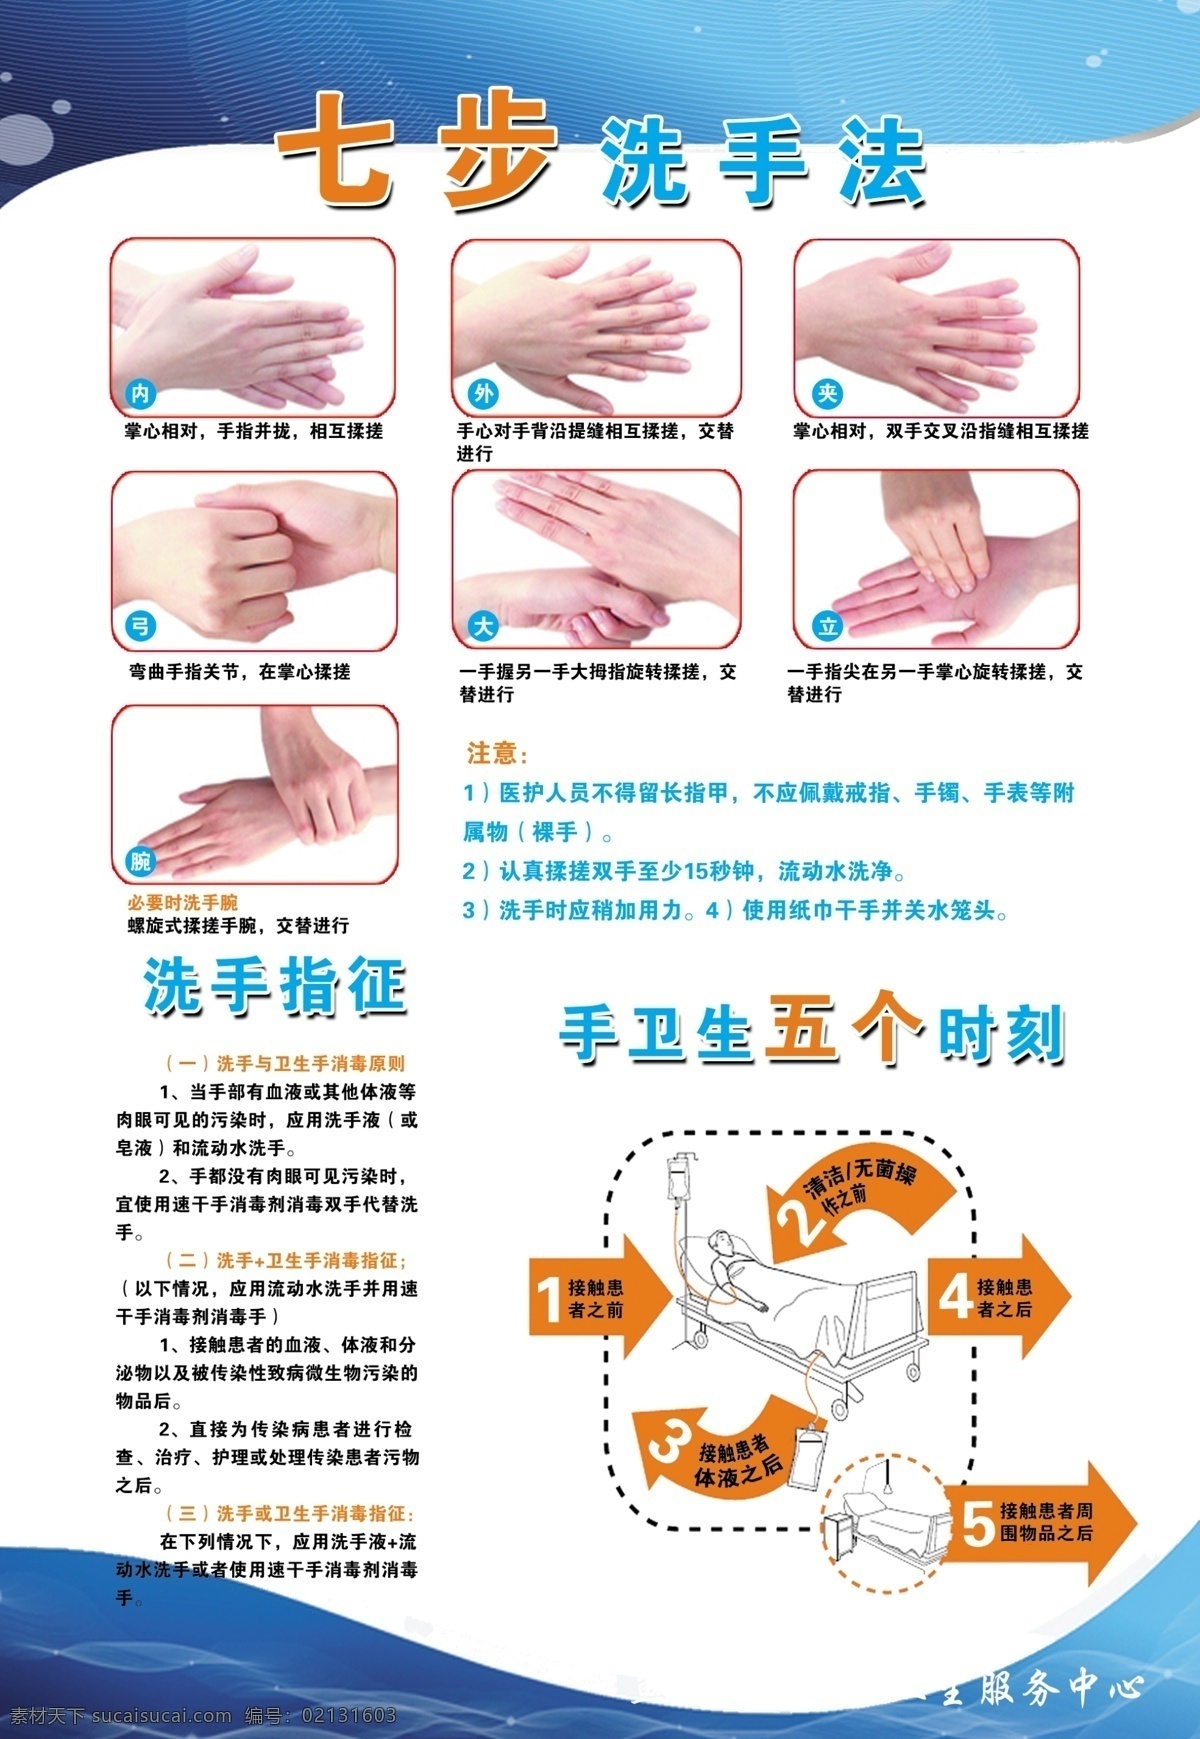 七步洗手法 洗手法 写真 海报 洗手指征 手卫生 五个时刻 分层